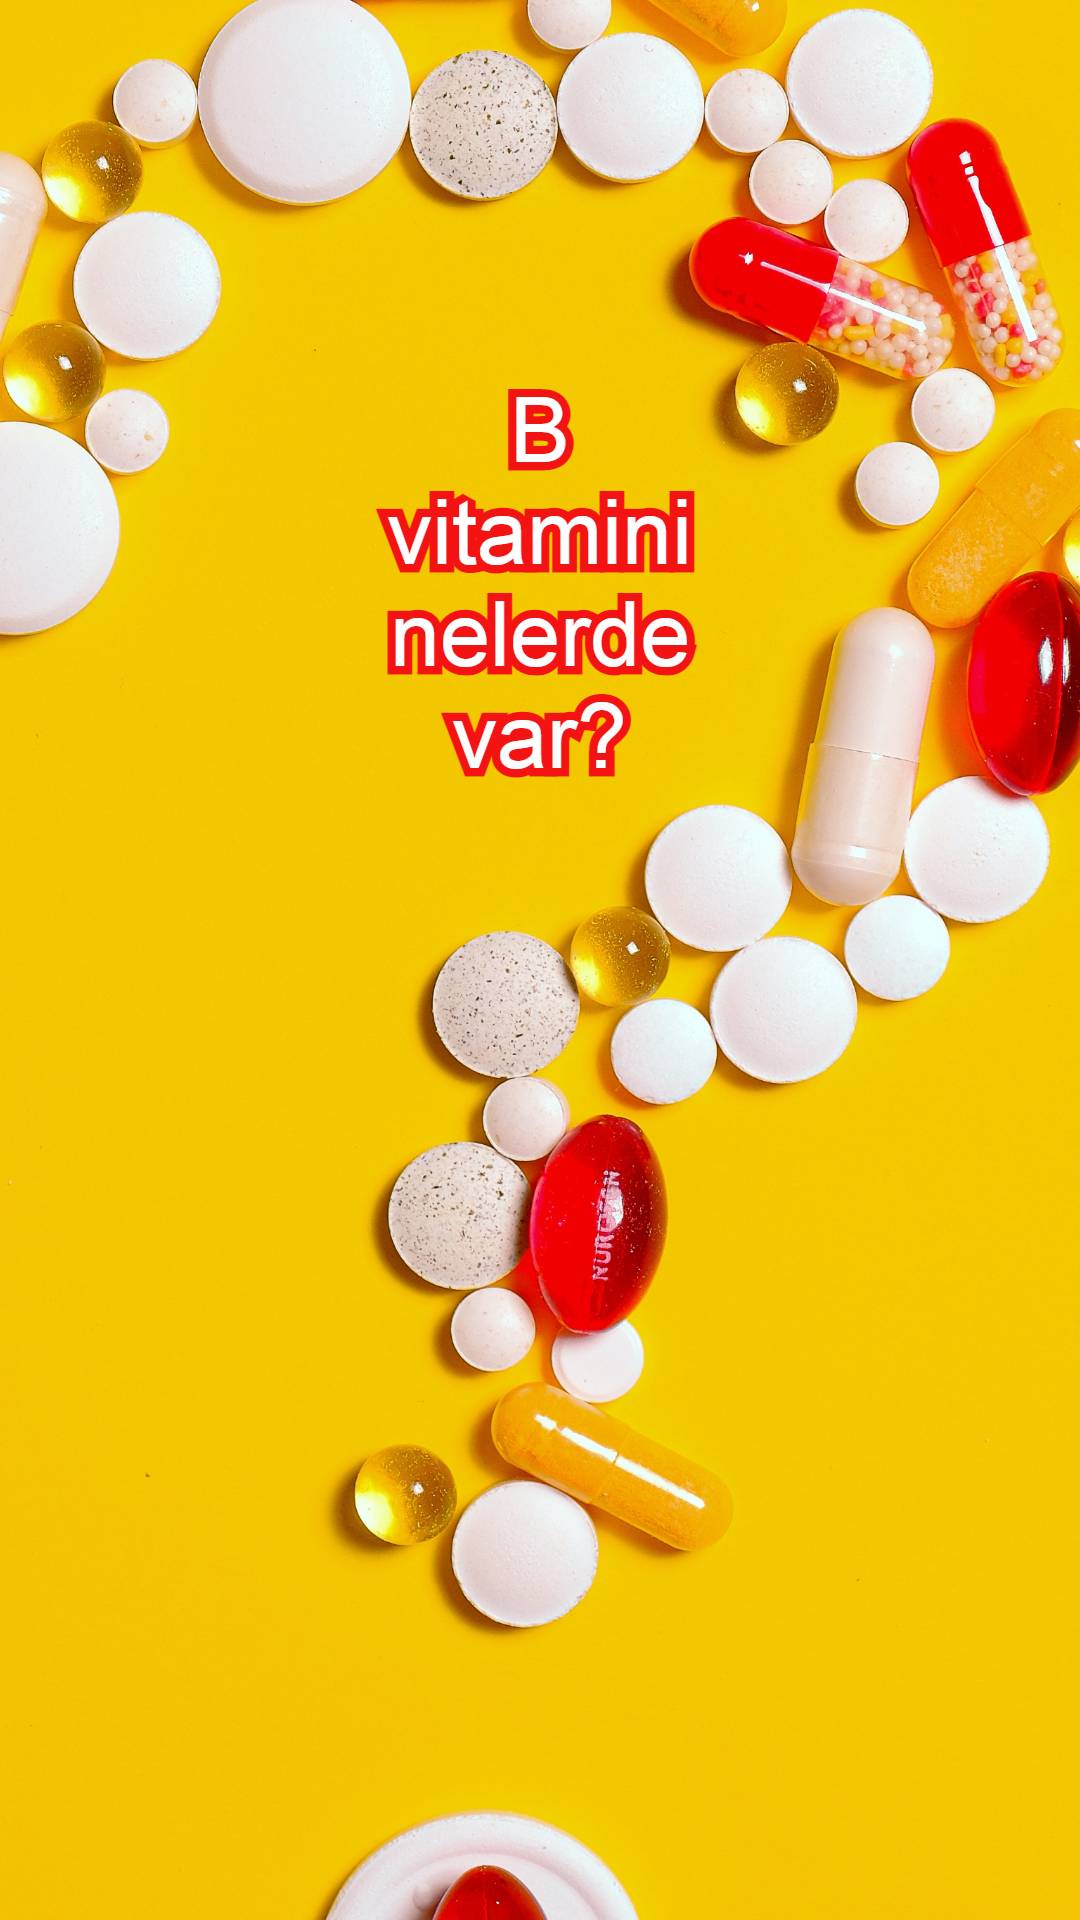 B vitamini faydaları-B vitamini ilaçları-B vitamini kompleksi-B vitamini-B vitamini nelerde var-B vitamini eksikliği-B vitamini fiyat